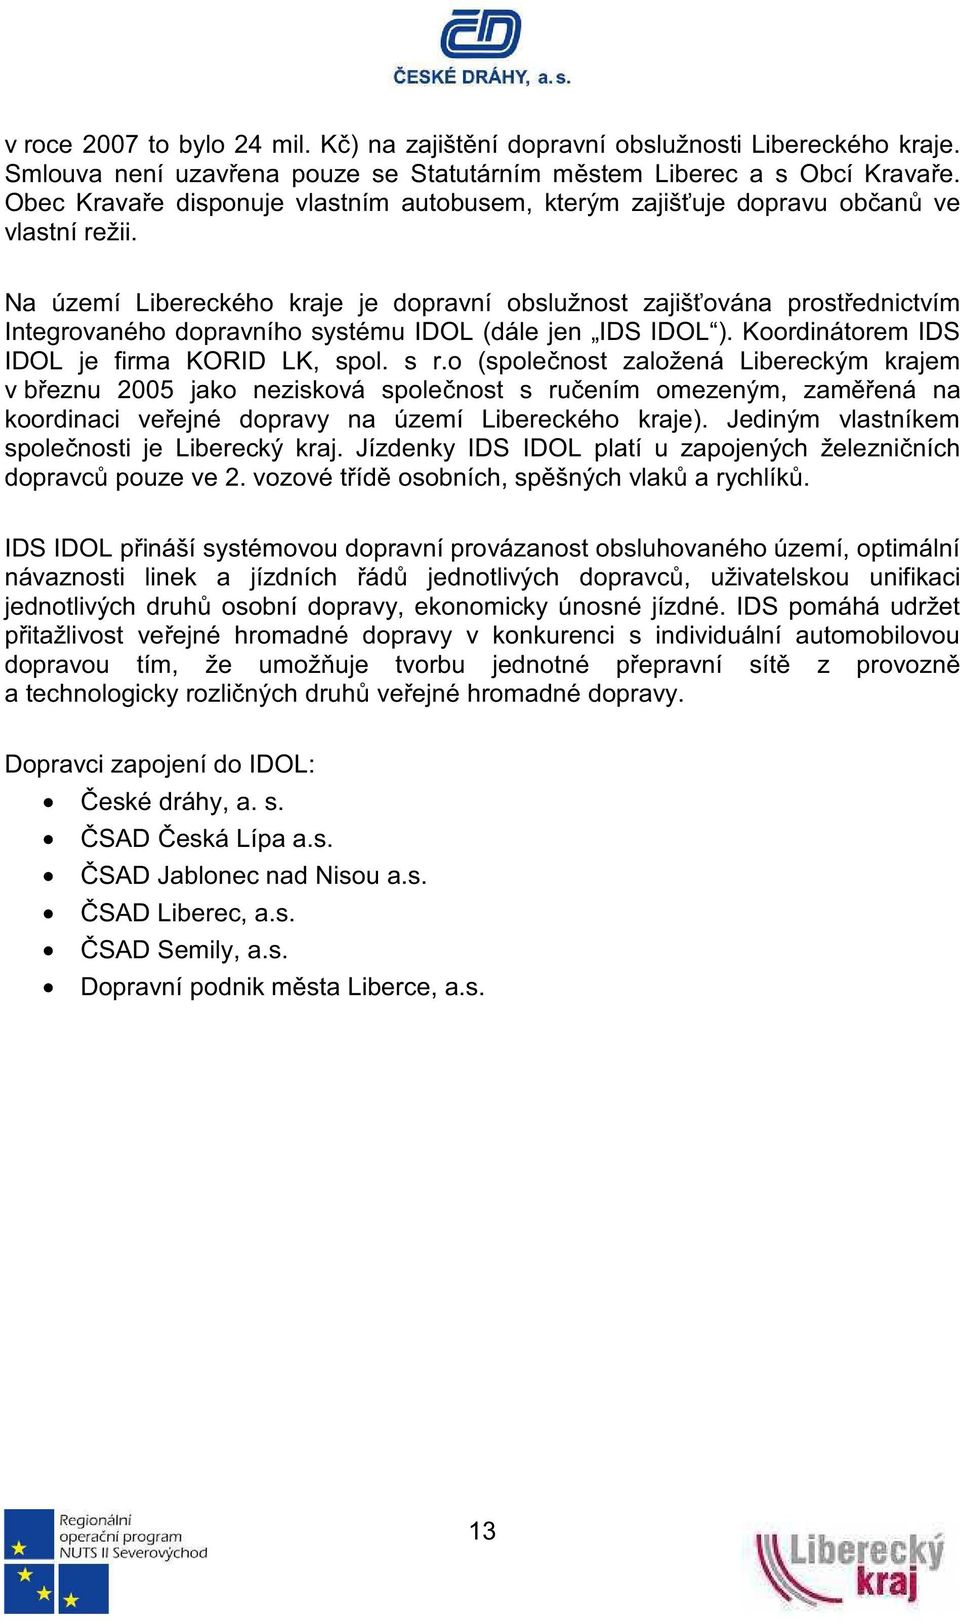 Na území Libereckého kraje je dopravní obslužnost zajišována prostednictvím Integrovaného dopravního systému IDOL (dále jen IDS IDOL ). Koordinátorem IDS IDOL je firma KORID LK, spol. s r.